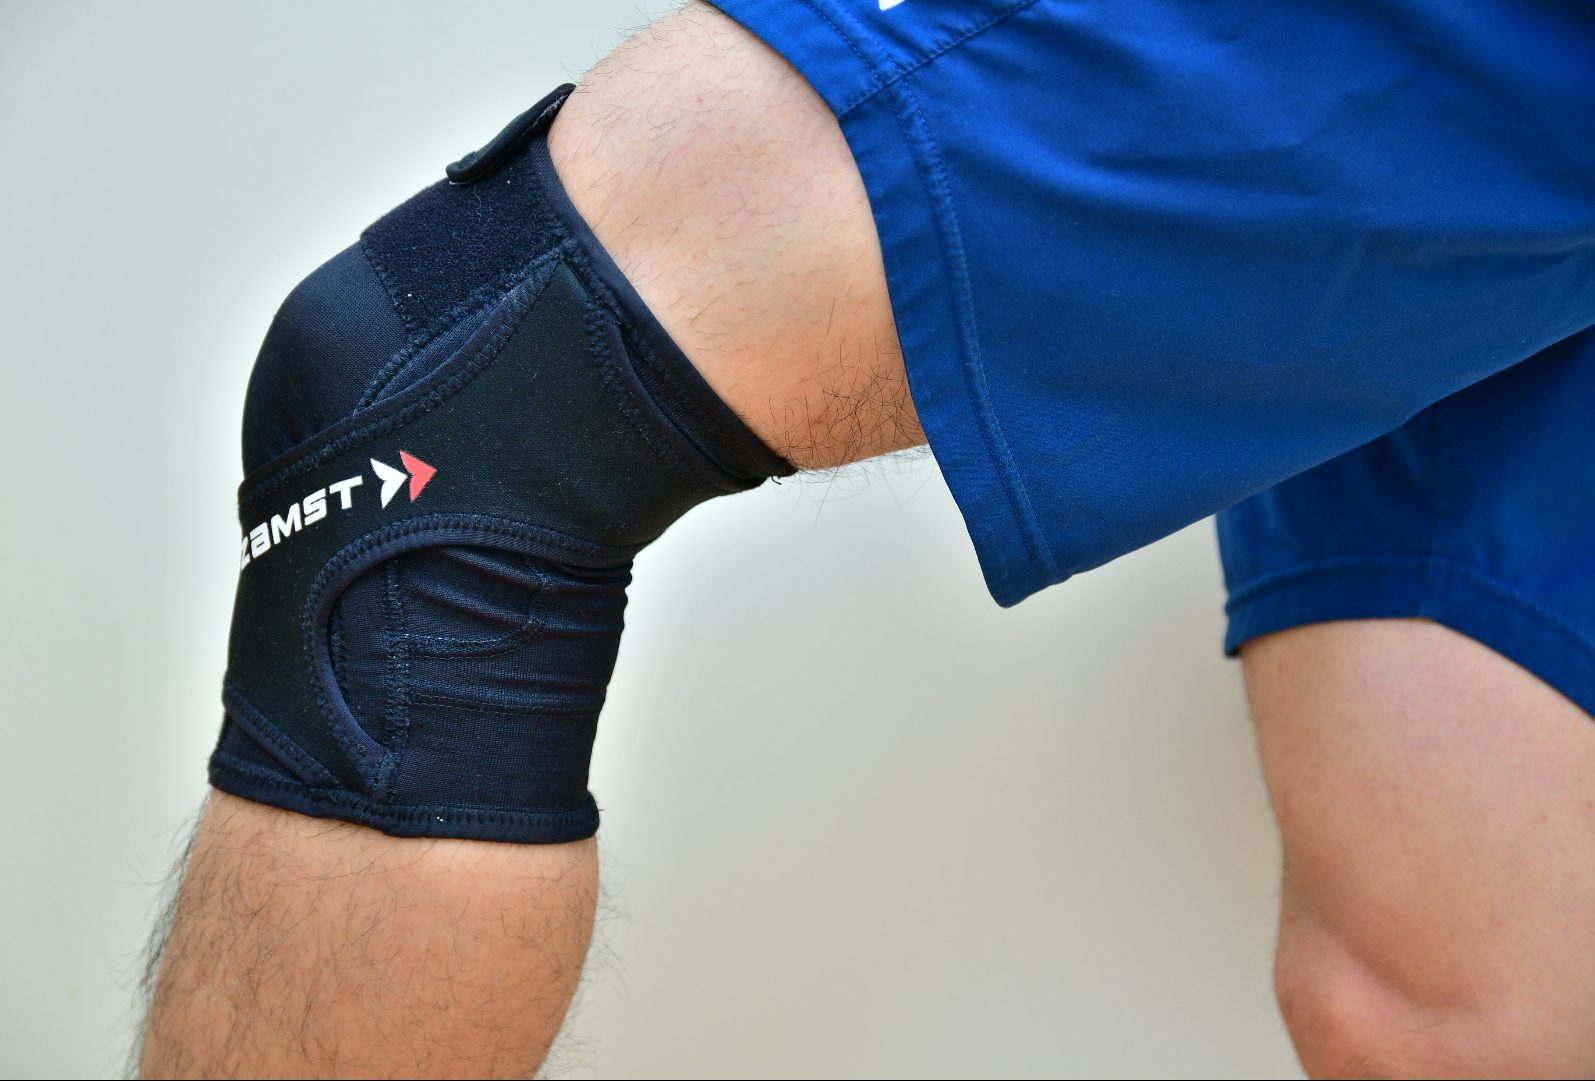 ランニングで膝が痛い人におすすめの膝サポーターを紹介 ザムストrk 1を使った感想は